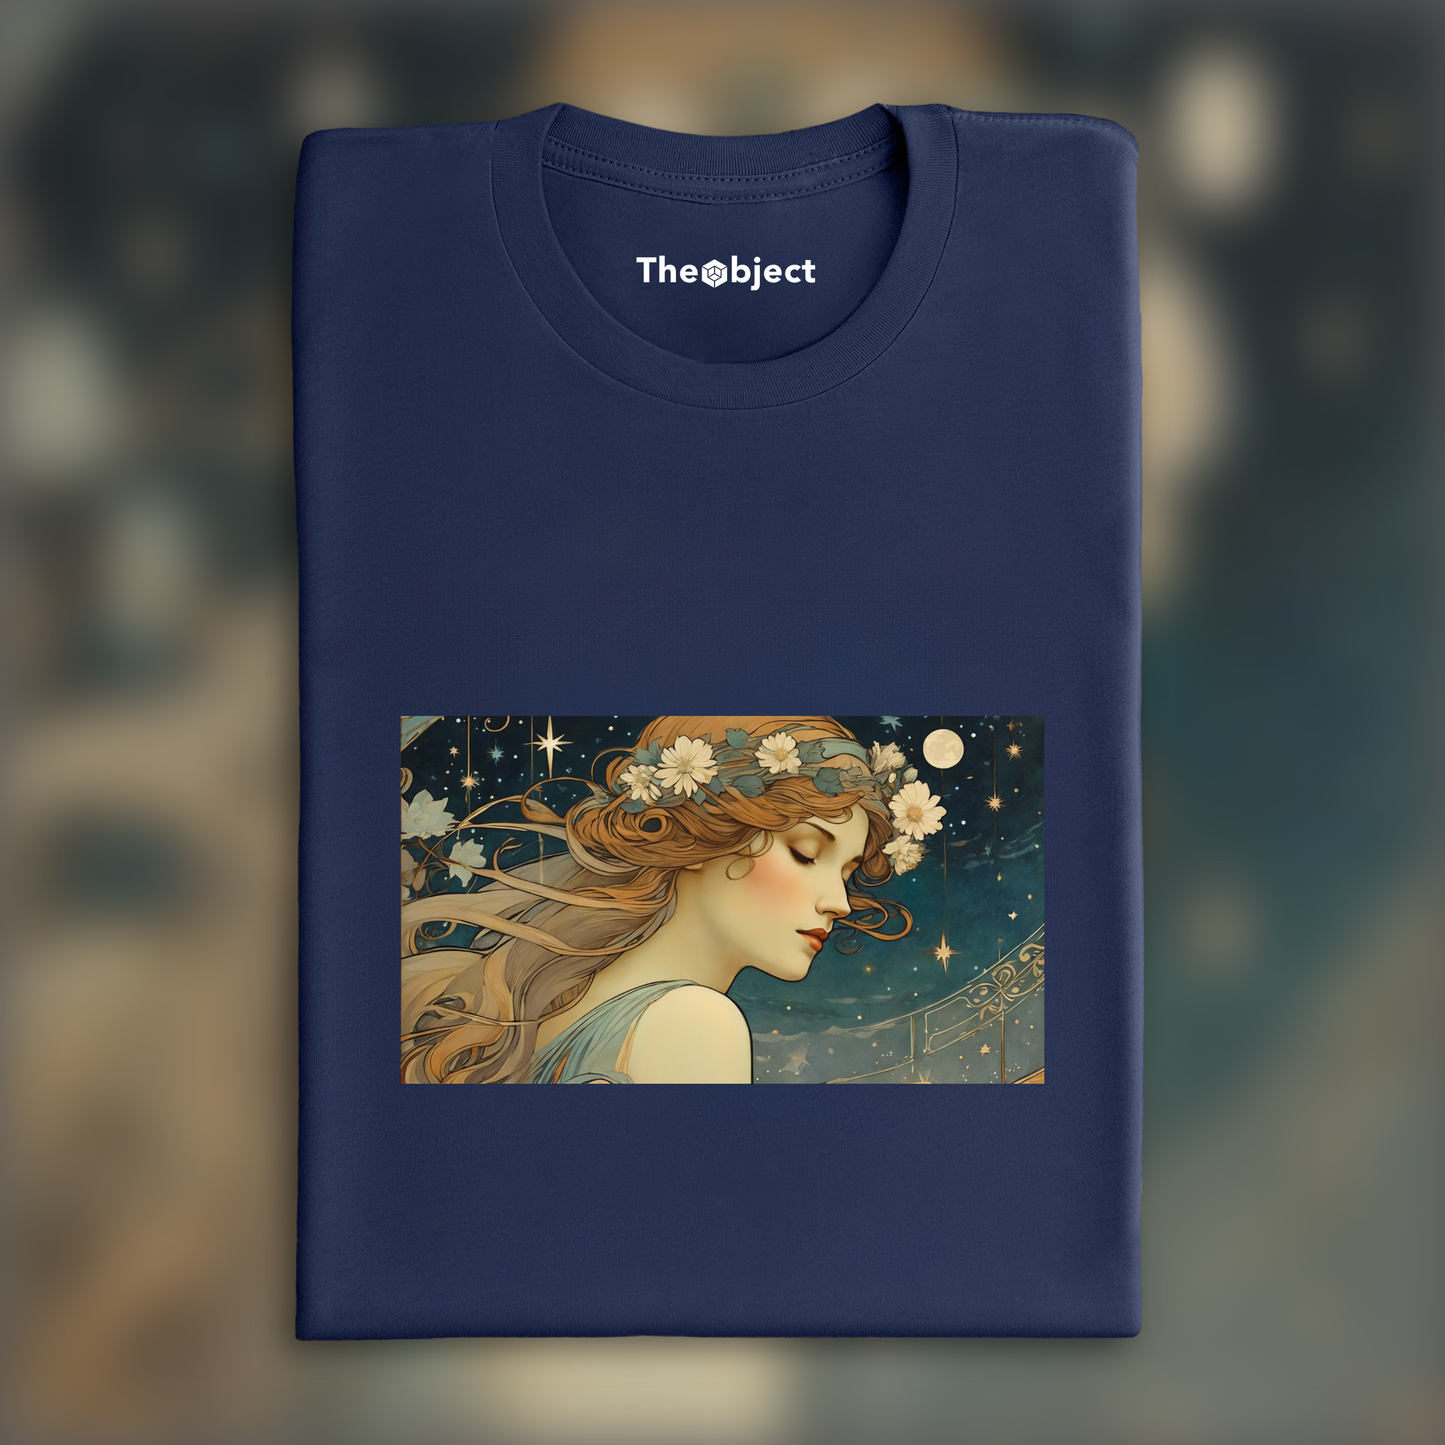 T-Shirt IA - Alfons Mucha, Portrait de Femme sous un ciel étoilé - 3970268897